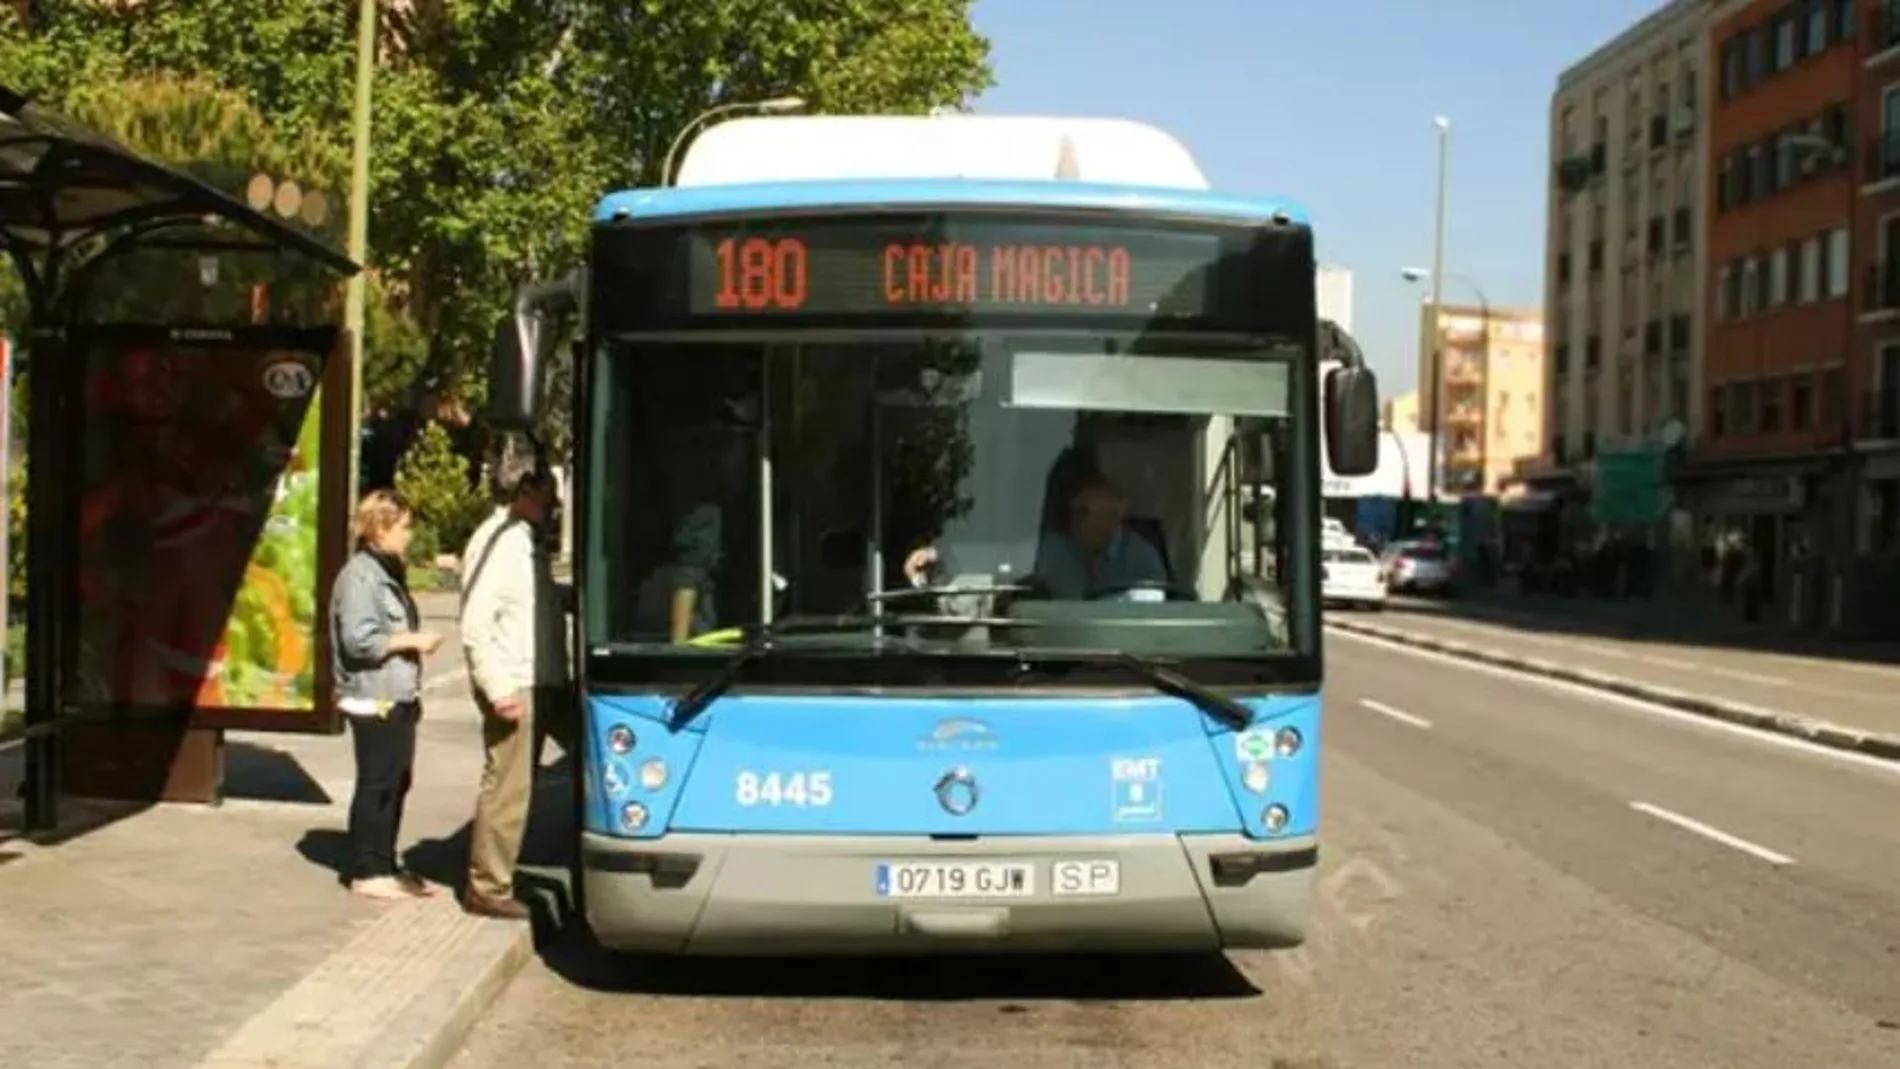 Autobús de la línea 180 de la EMT en Madrid